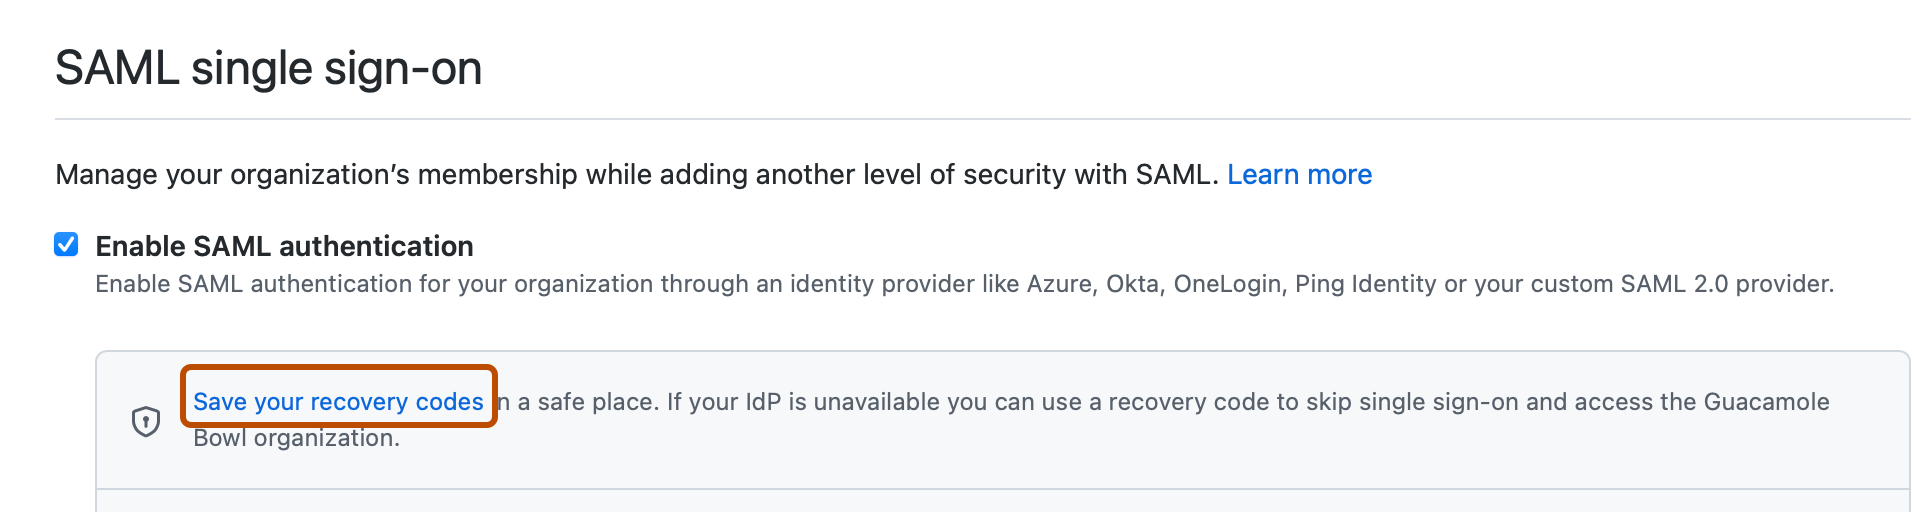 Captura de tela da seção "SAML no logon único". Um link, rotulado como "Salvar seus códigos de recuperação", é realçado com um contorno laranja.